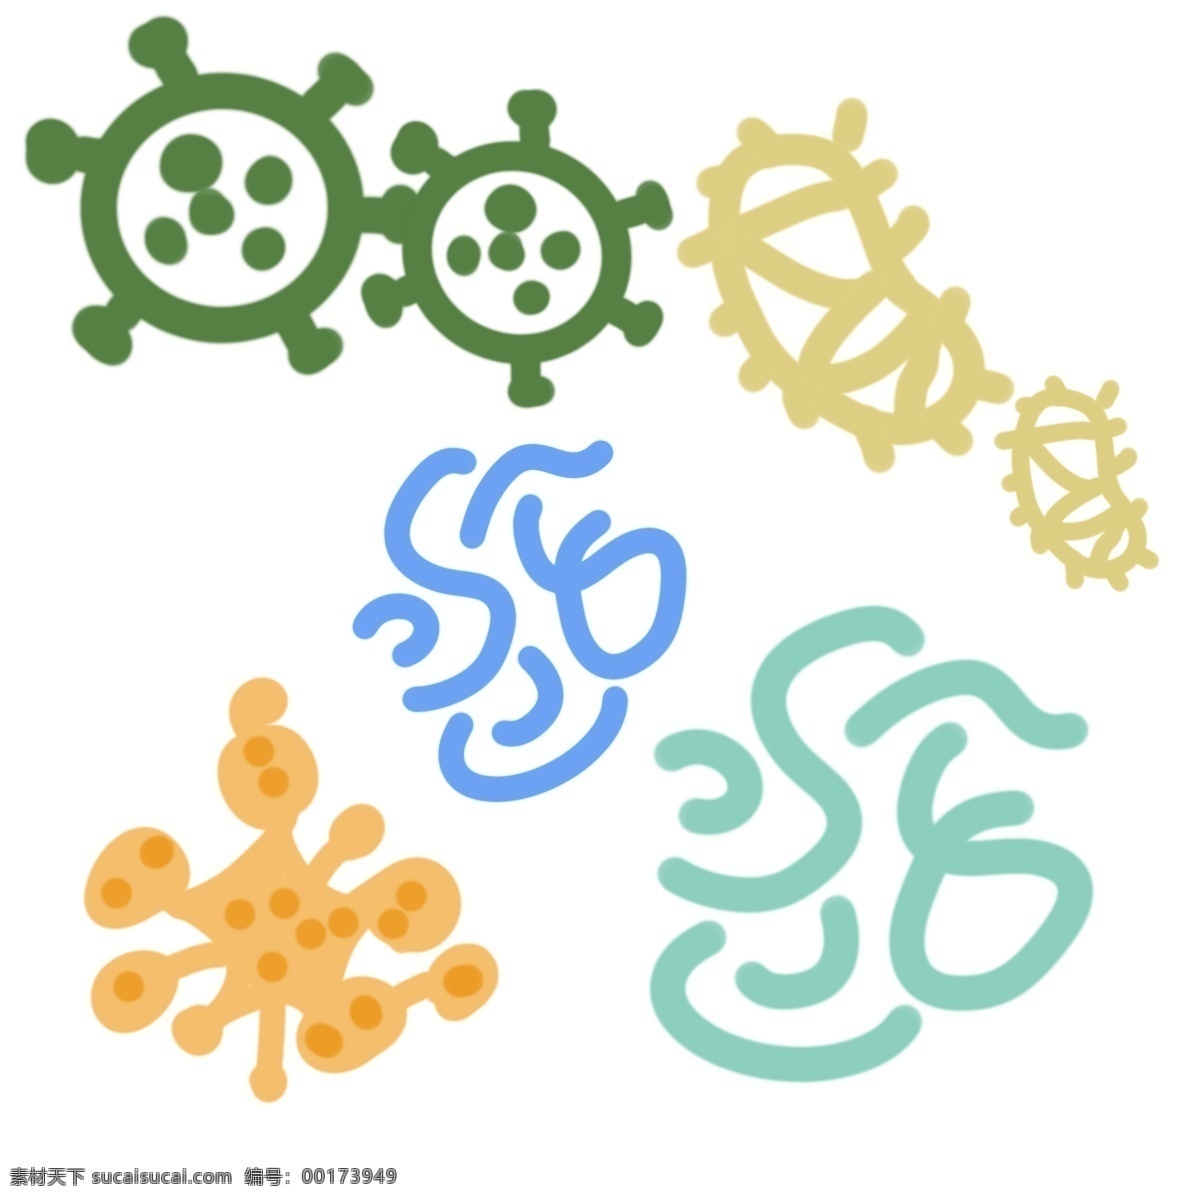 各式 细菌 创意 插画 各式细菌插画 黄色 蓝色杆菌 条形细菌 绿色球菌 生物细菌 卡通细菌插画